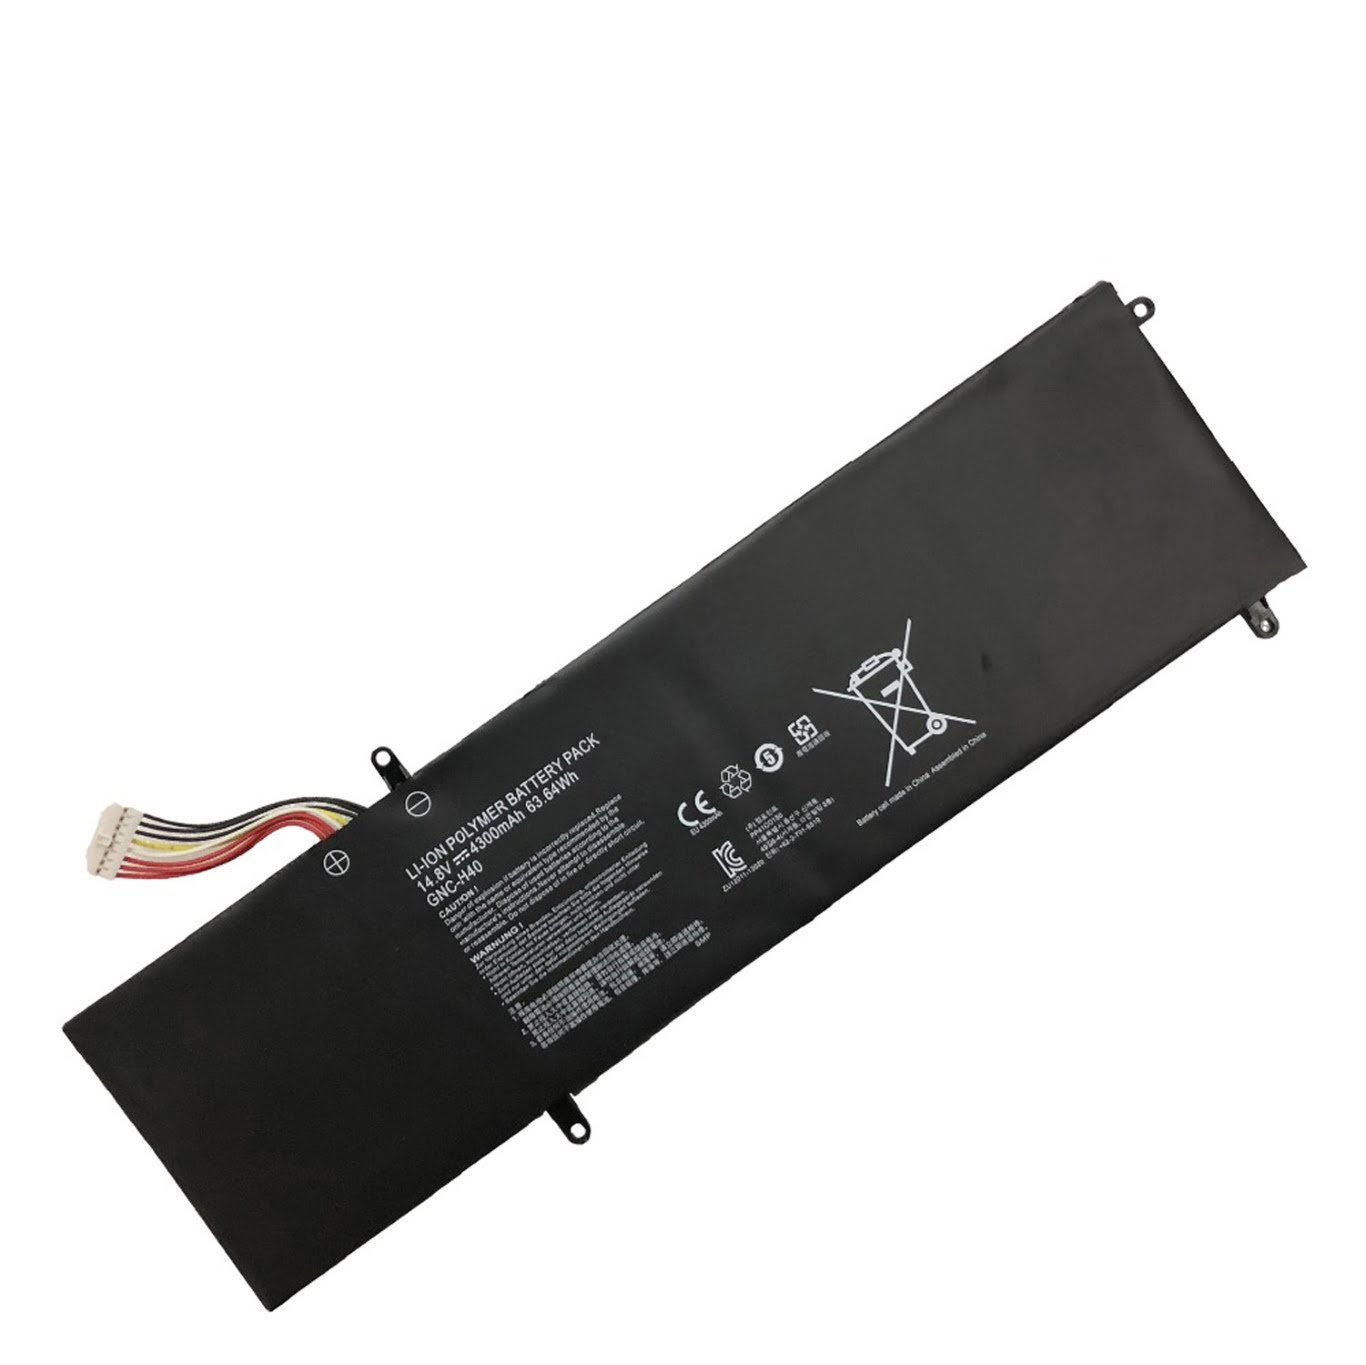 GNC-H40 replacement Laptop Battery for Gigabyte P34, V2, 4300mah / 63.64wh, 14.8V